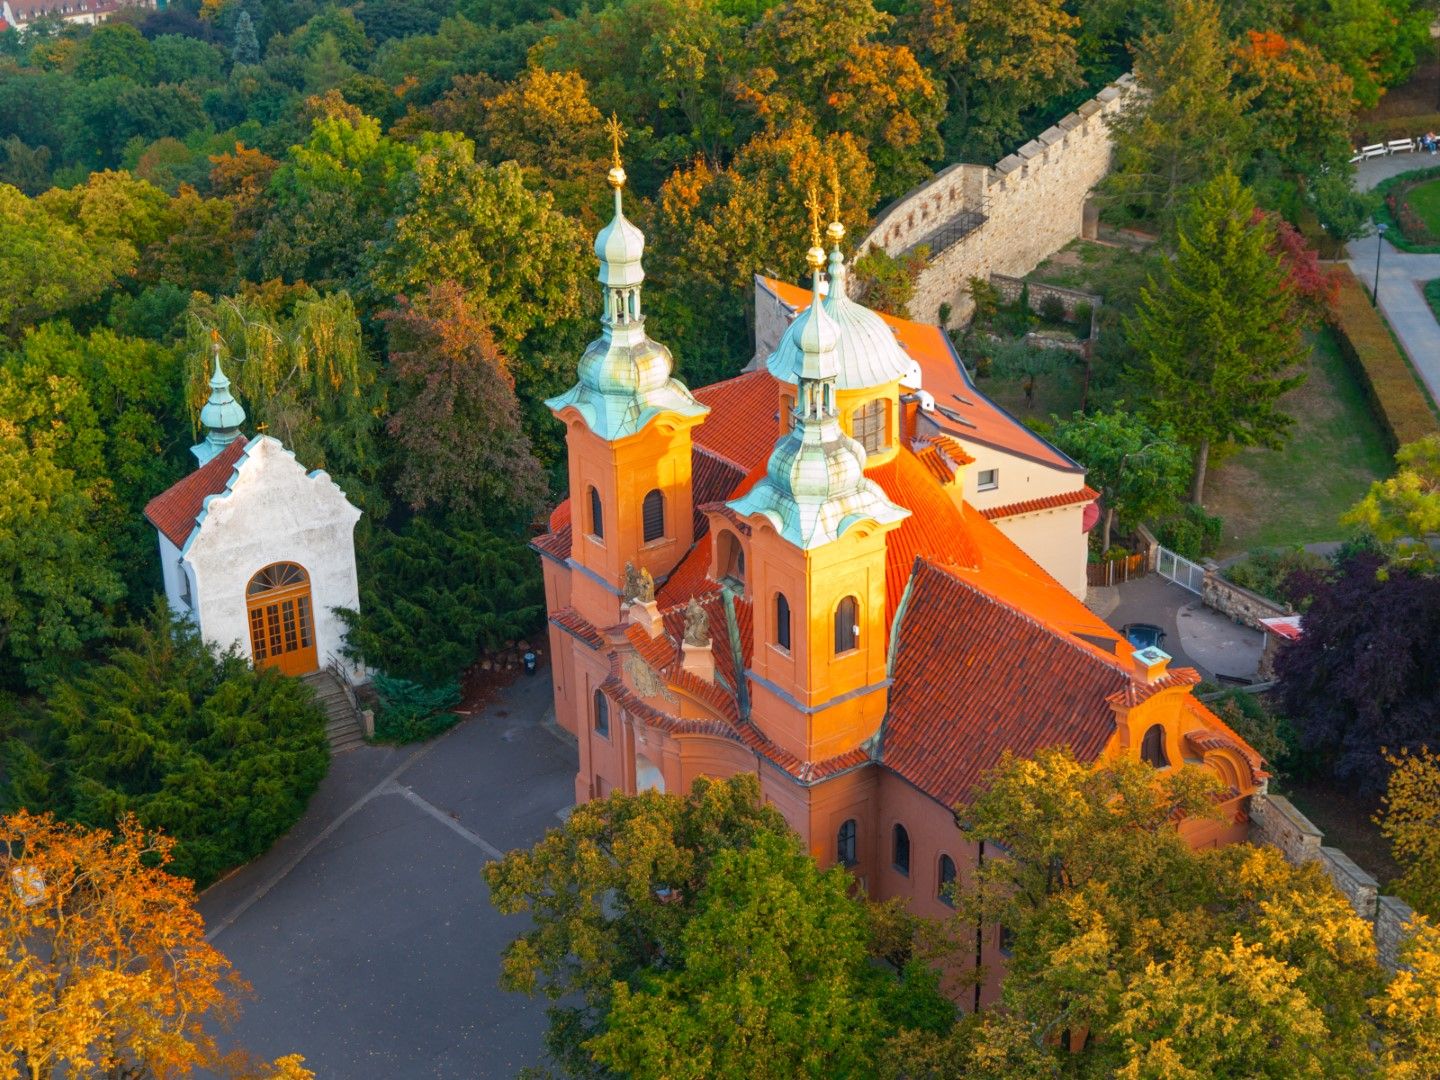 Църквата "Свети Вавринец" на хълма Петрин в Прага